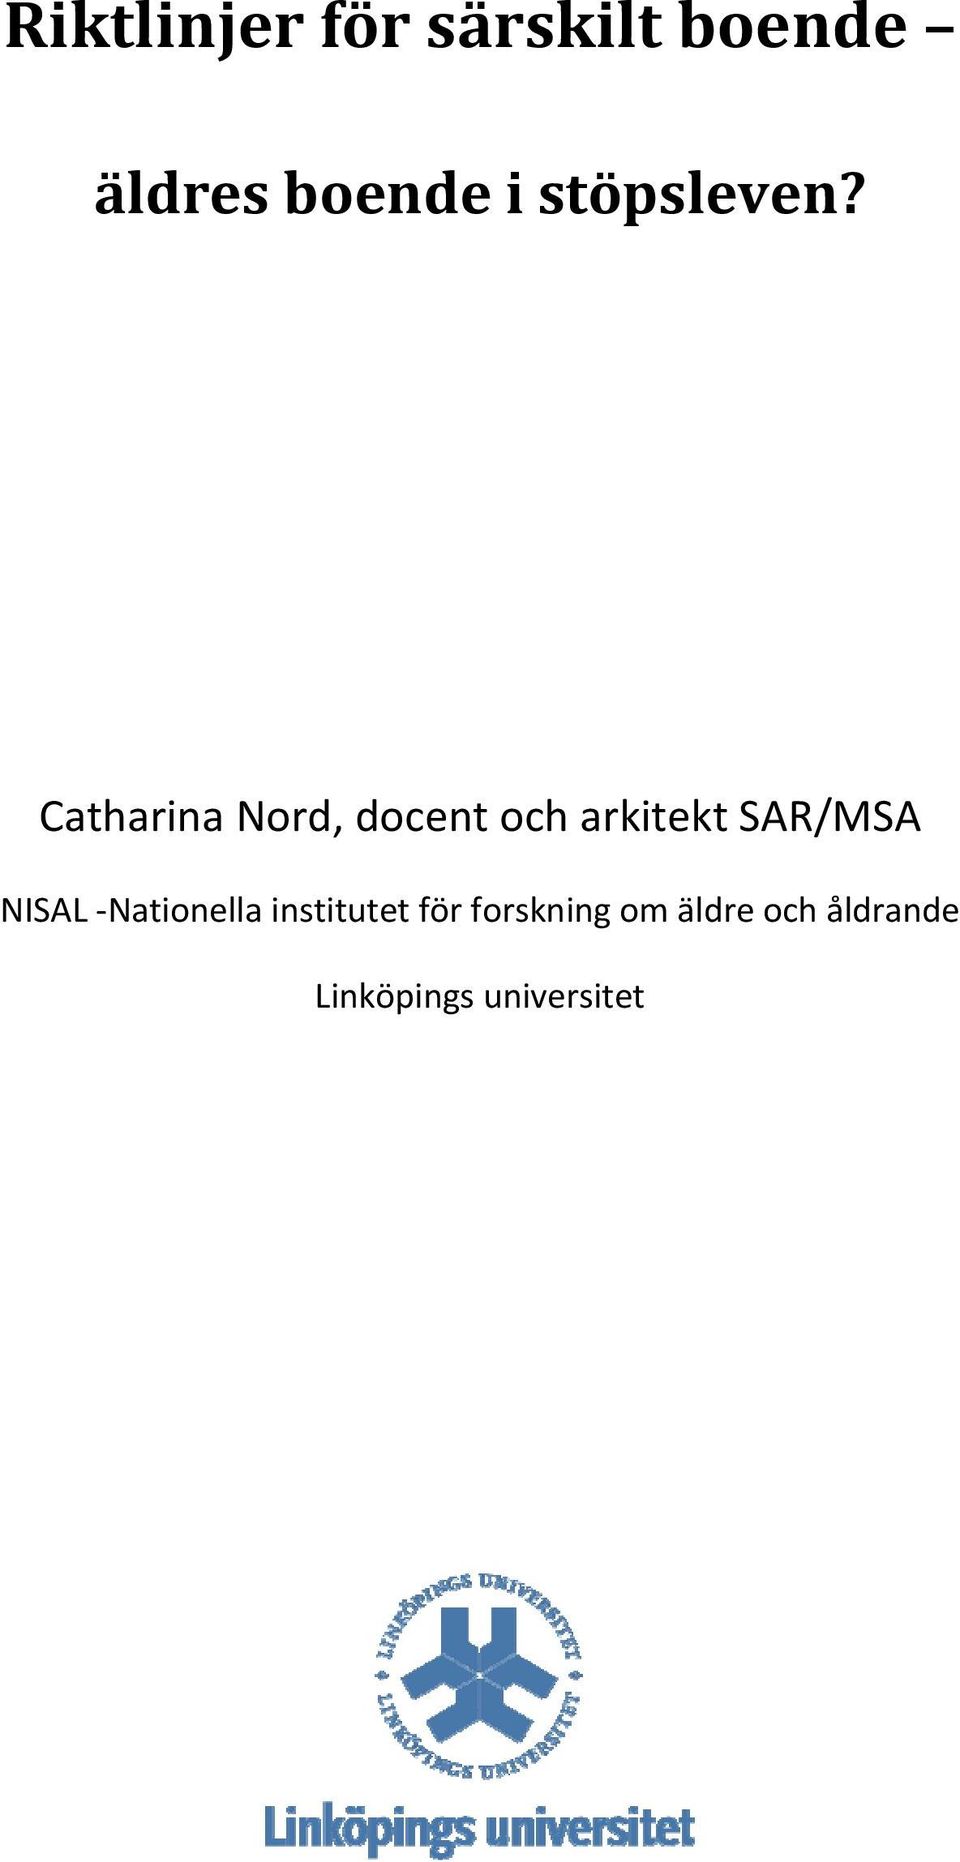 Catharina Nord, docent och arkitekt SAR/MSA